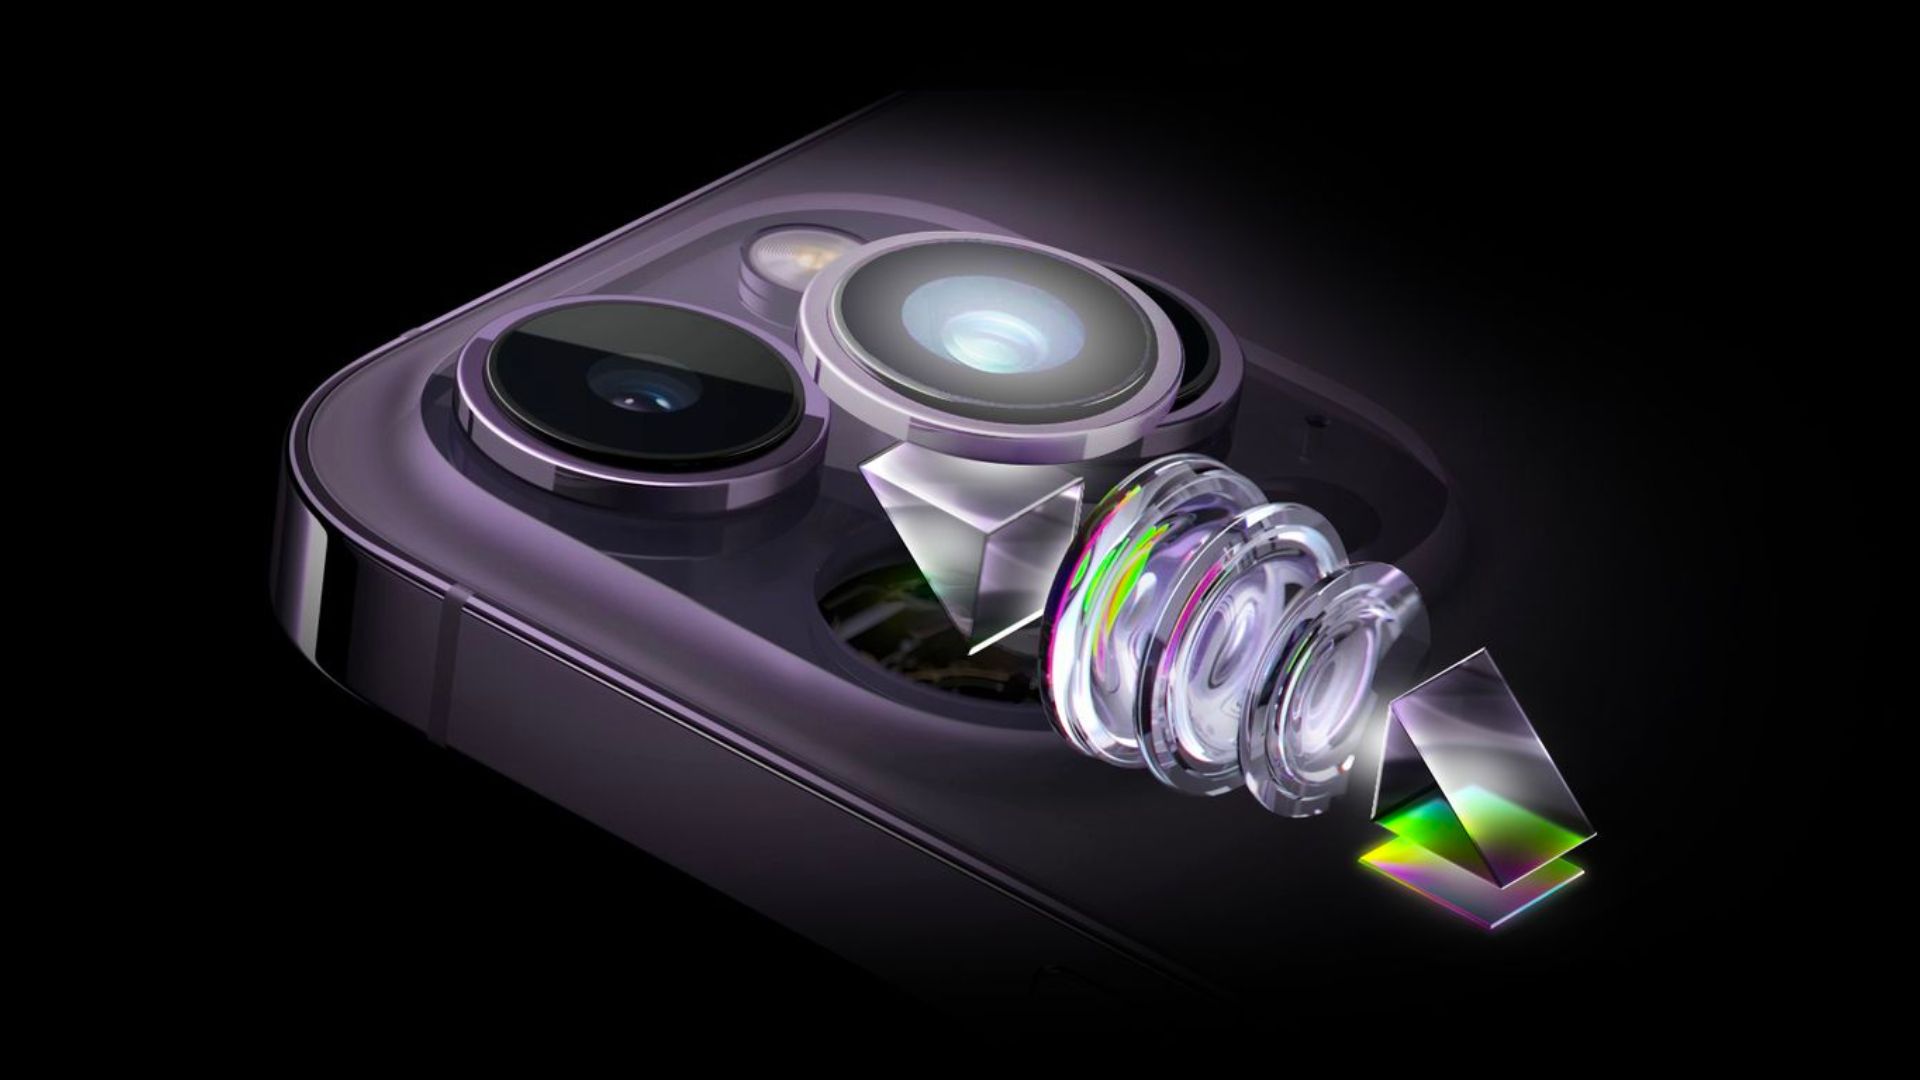 เผยภาพเรนเดอร์ชุดใหม่ iPhone 15 Pro Series มาพร้อมปุ่มแบบใหม่ และกล้องหลังที่ขนาดใหญ่ขึ้น !